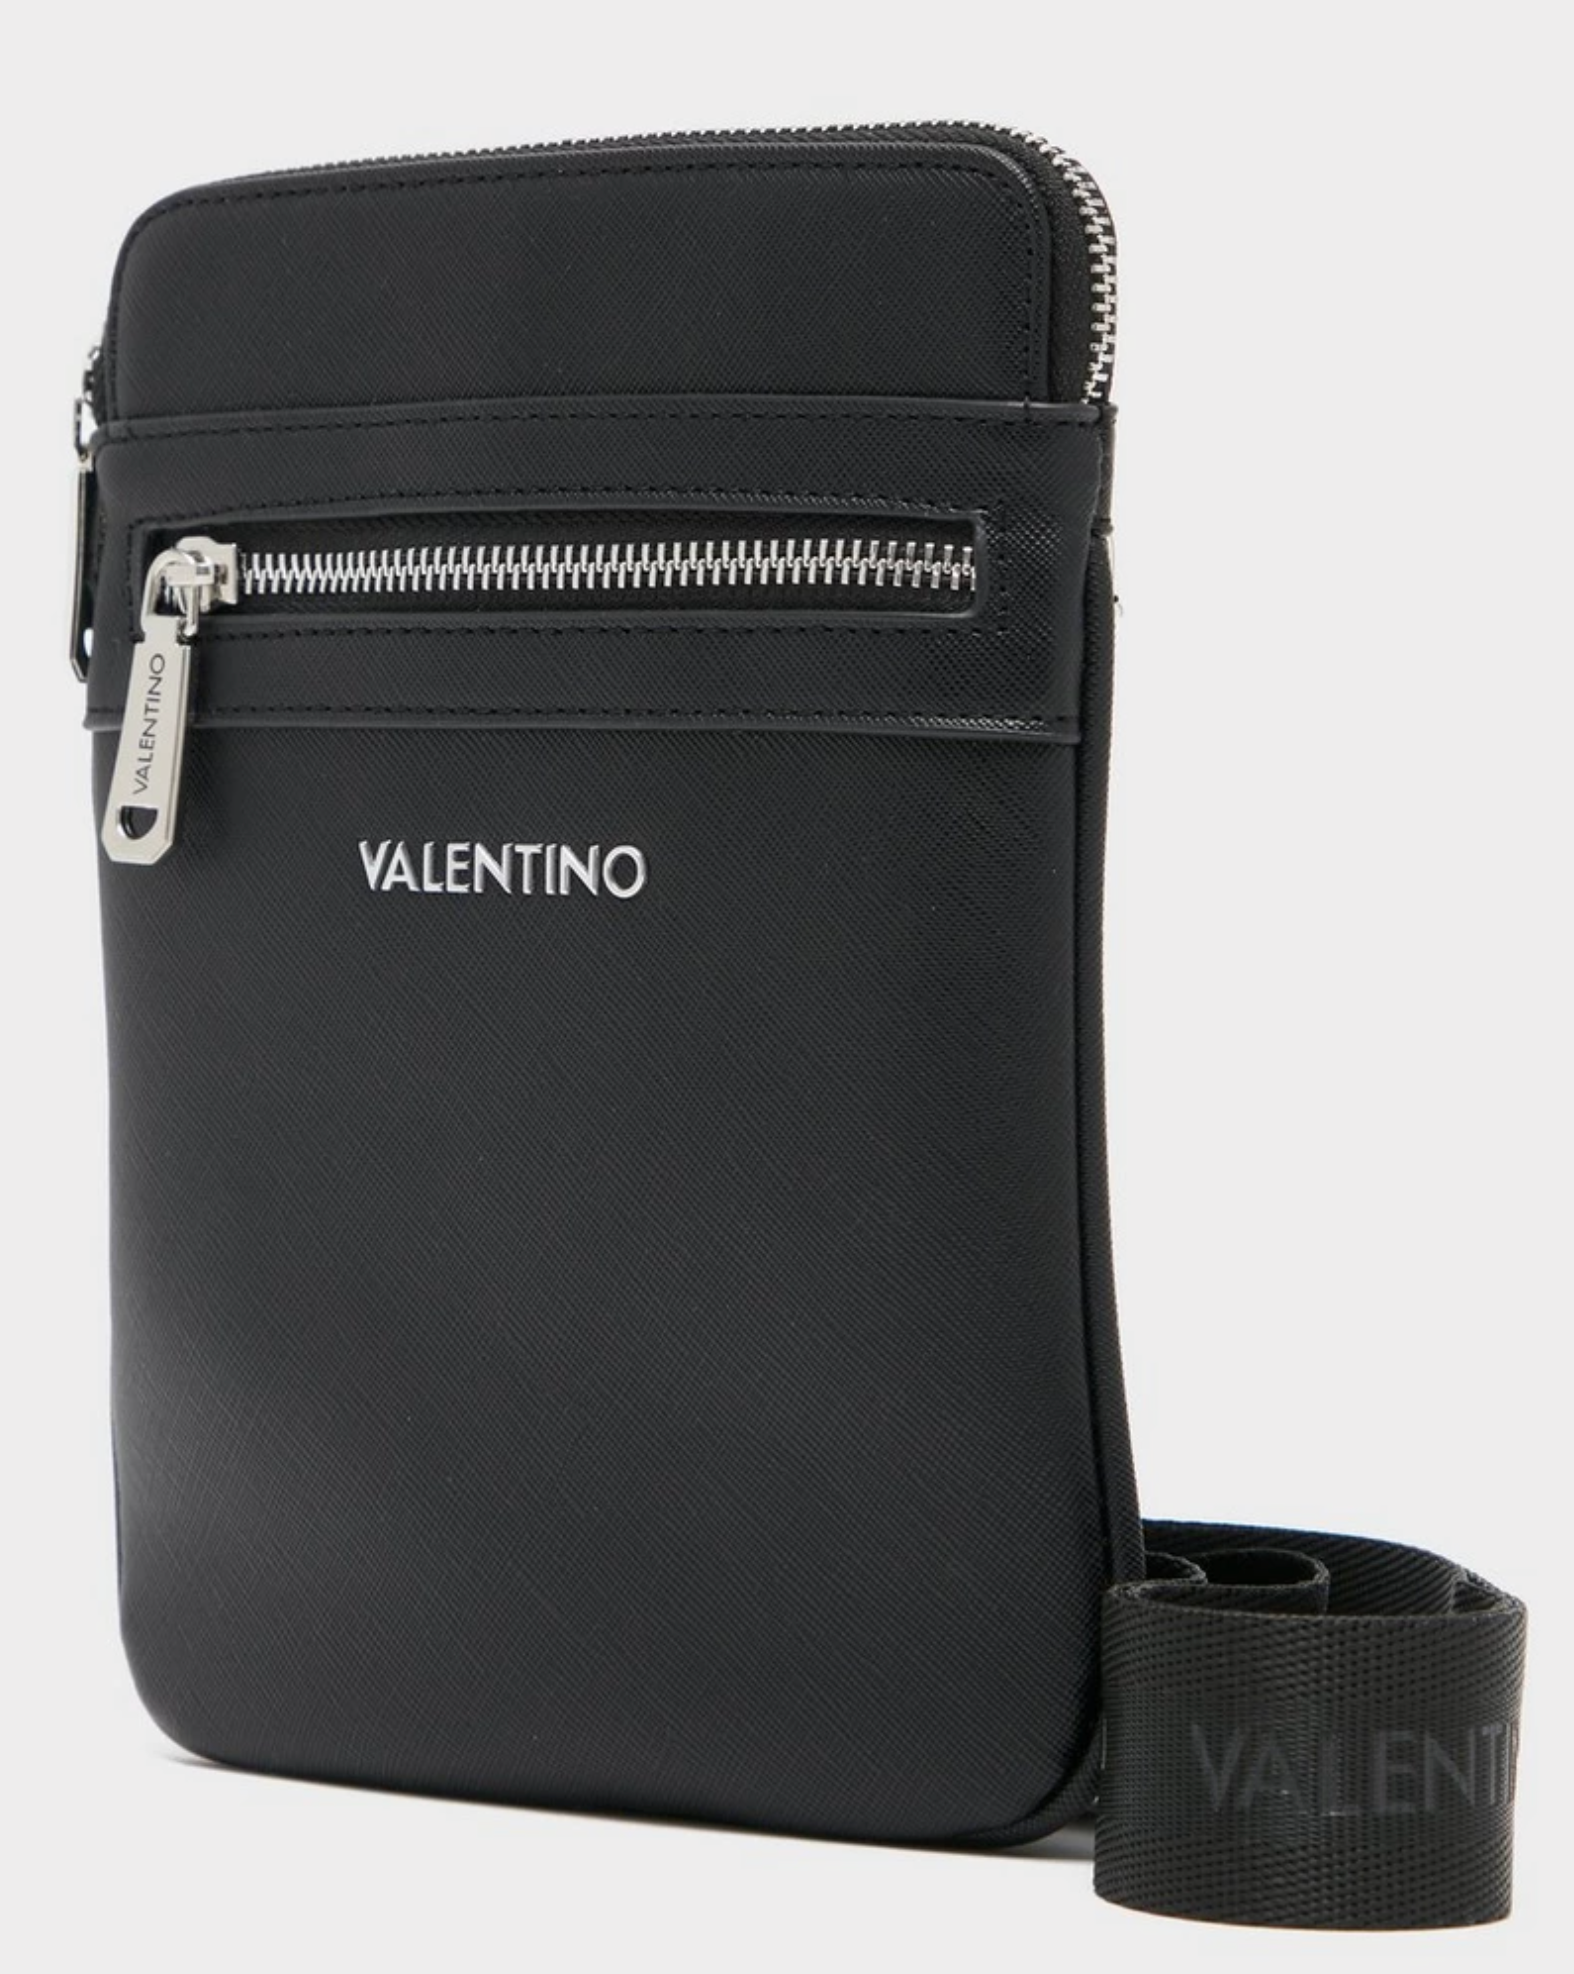 Valentino "MARNIER" CrossBody Bag Black